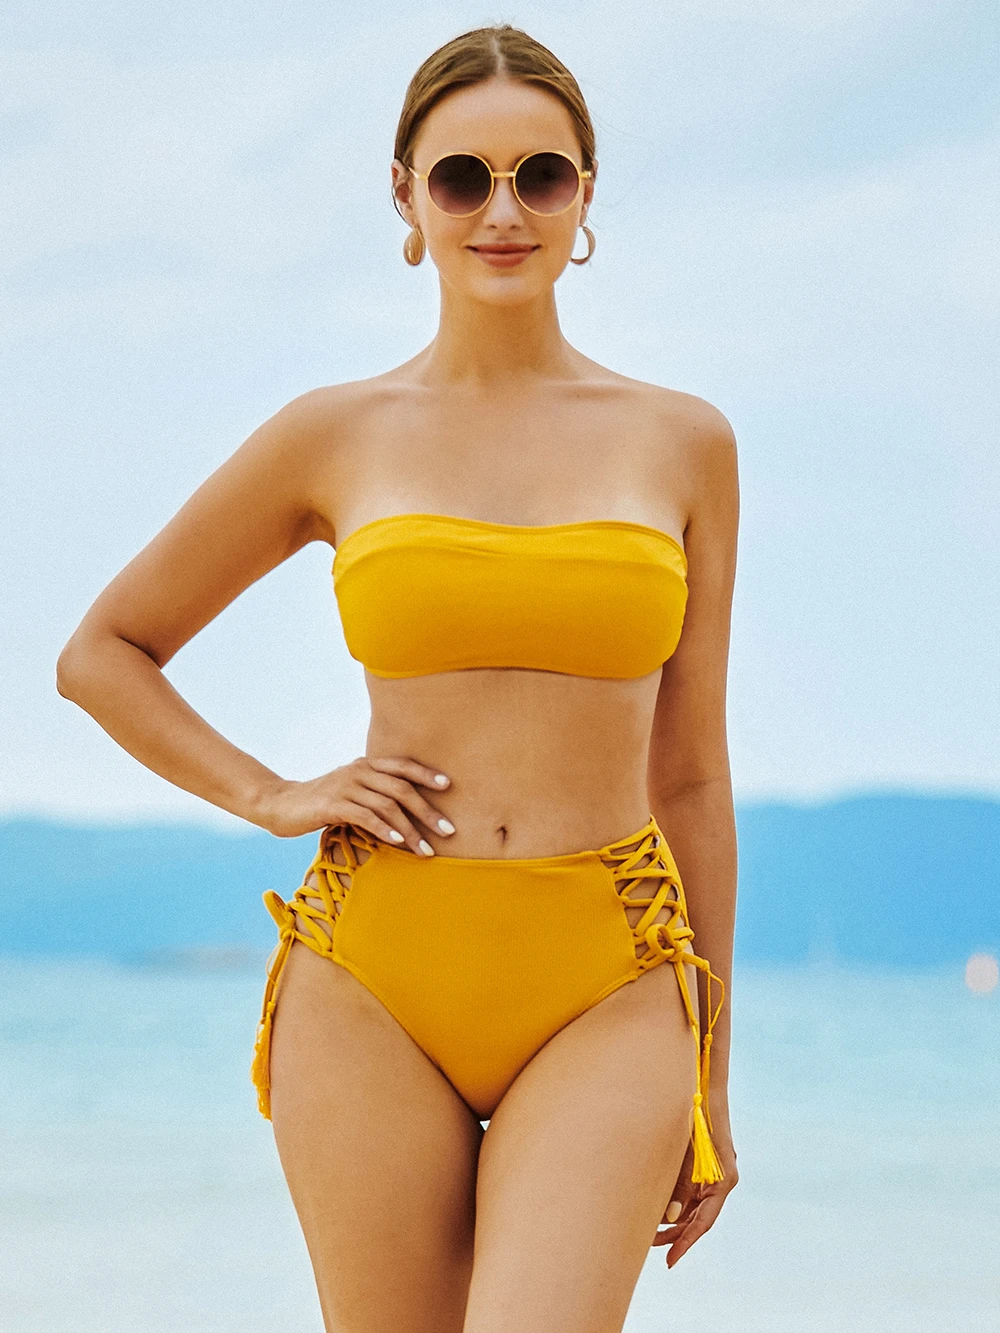 

Женский купальник с чашками пуш-ап, однотонный желтый купальник-бандо из двух предметов, сексуальная пляжная одежда, летний купальный костю...